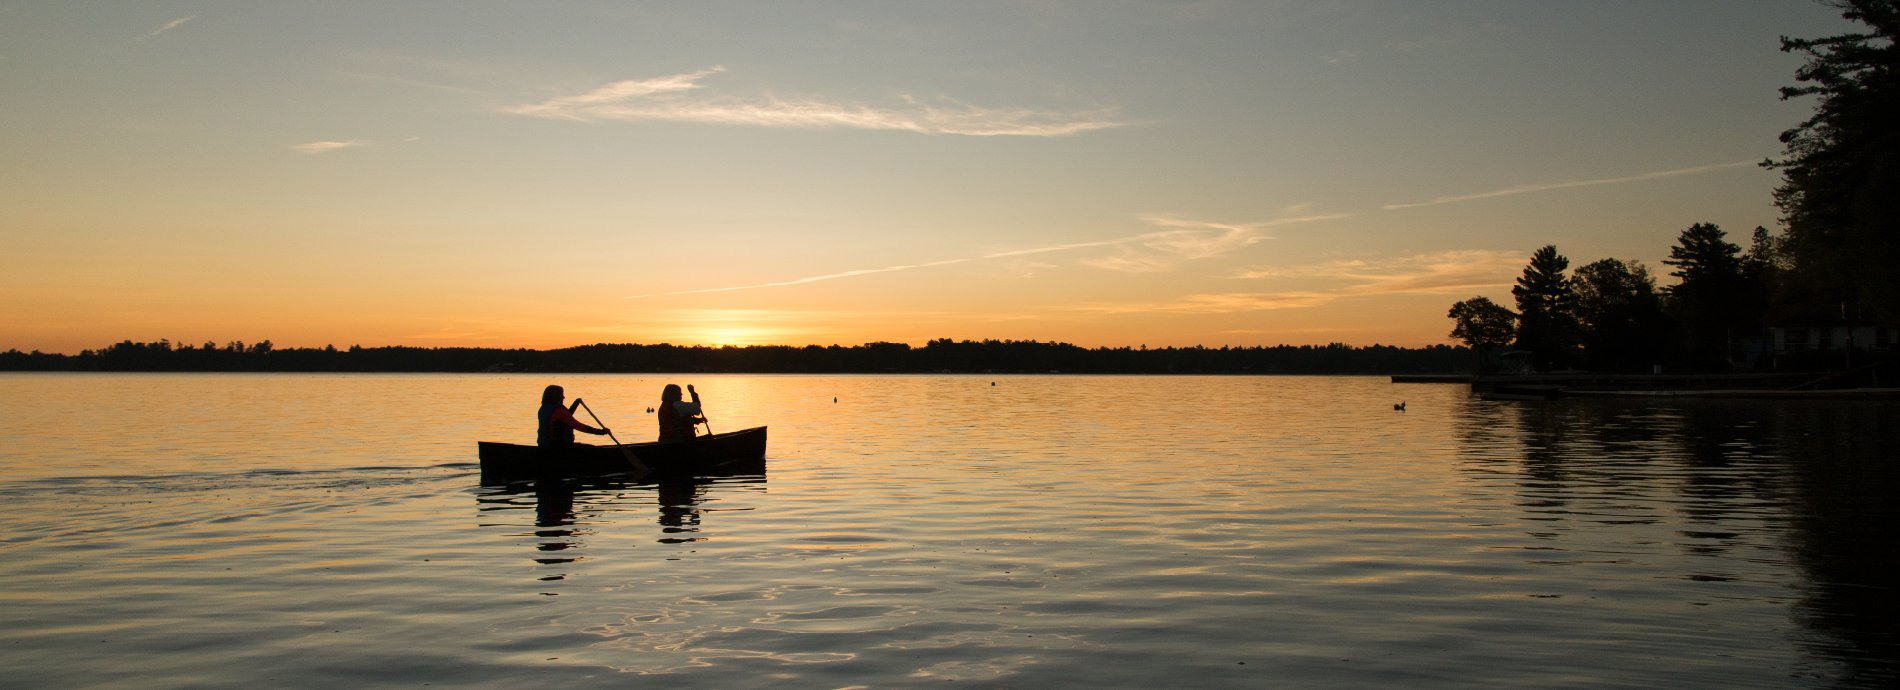 canoeing at dusk